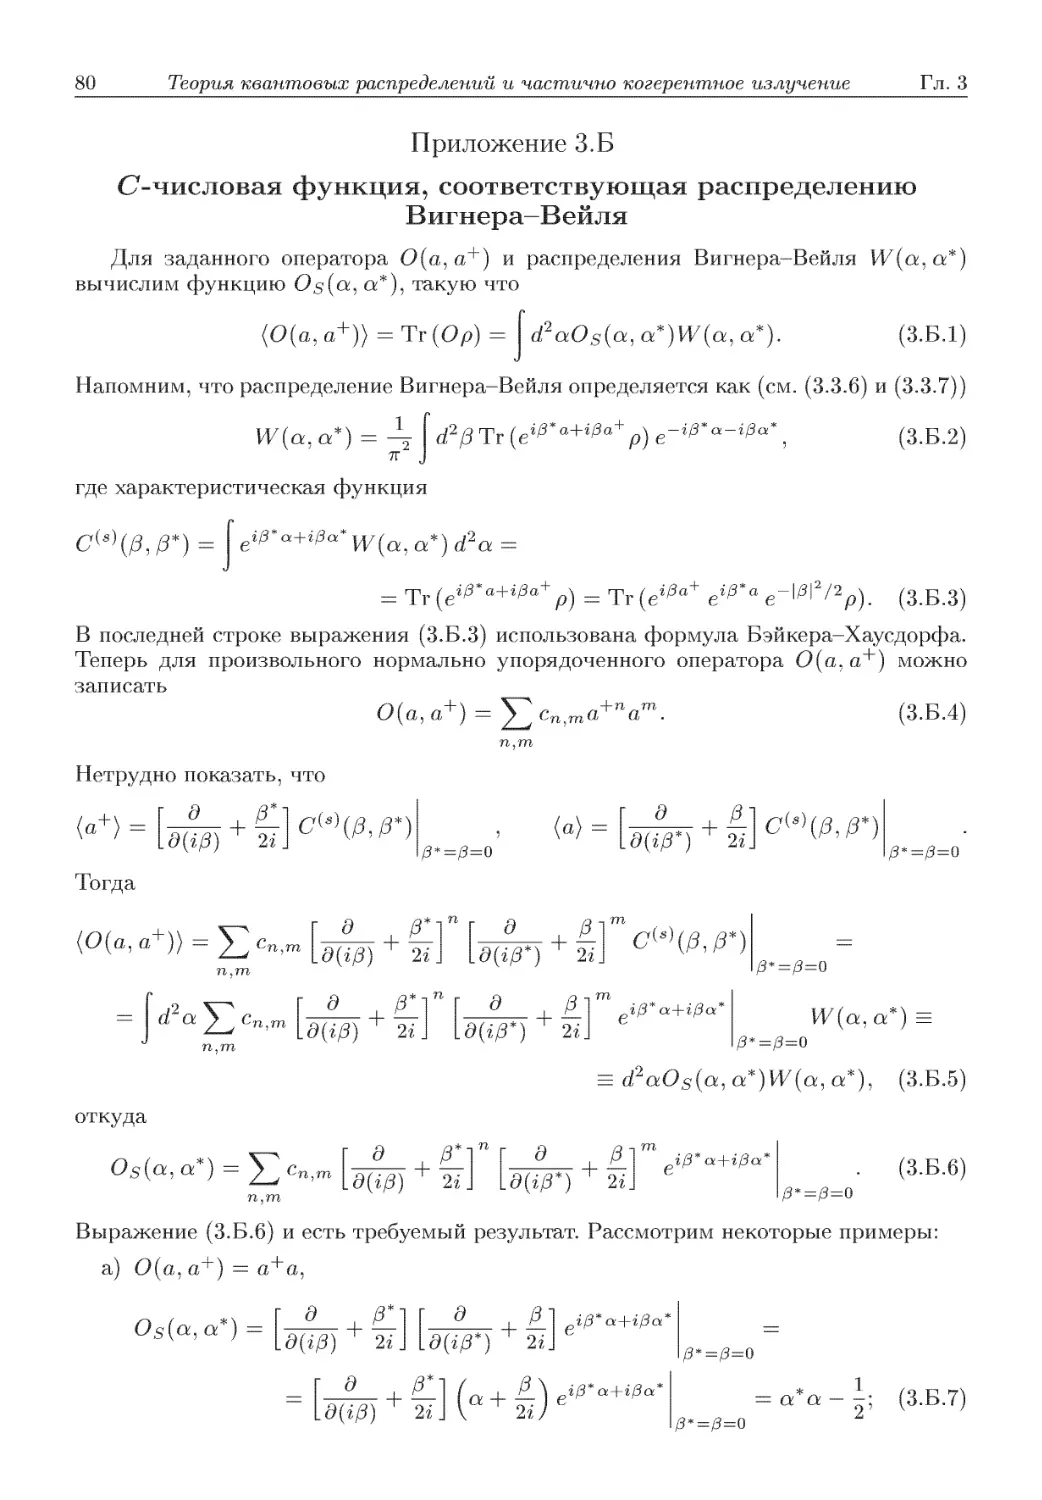 Приложение 3.Б. О-числовая функция, соответствующая распределению Вигаера-Вейля